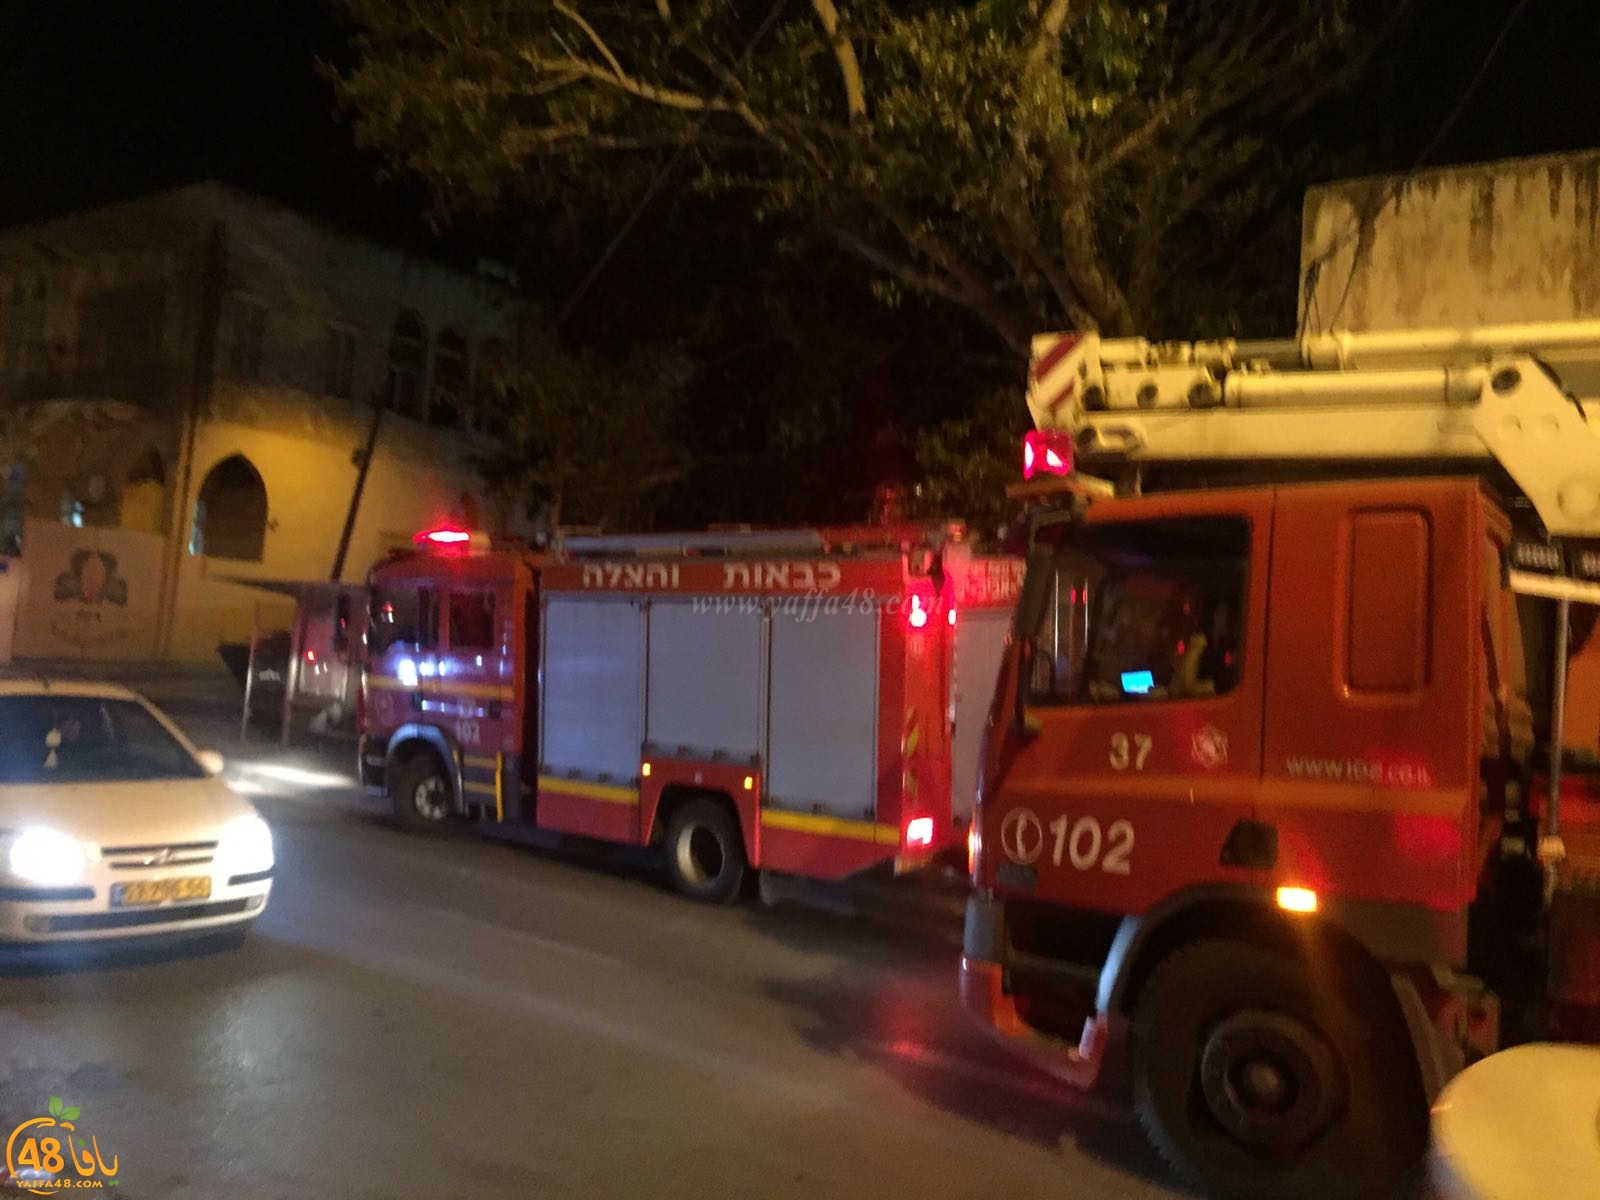  يافا: بلاغ كاذب باندلاع حريق في مركز الشبيبة يييفت 83